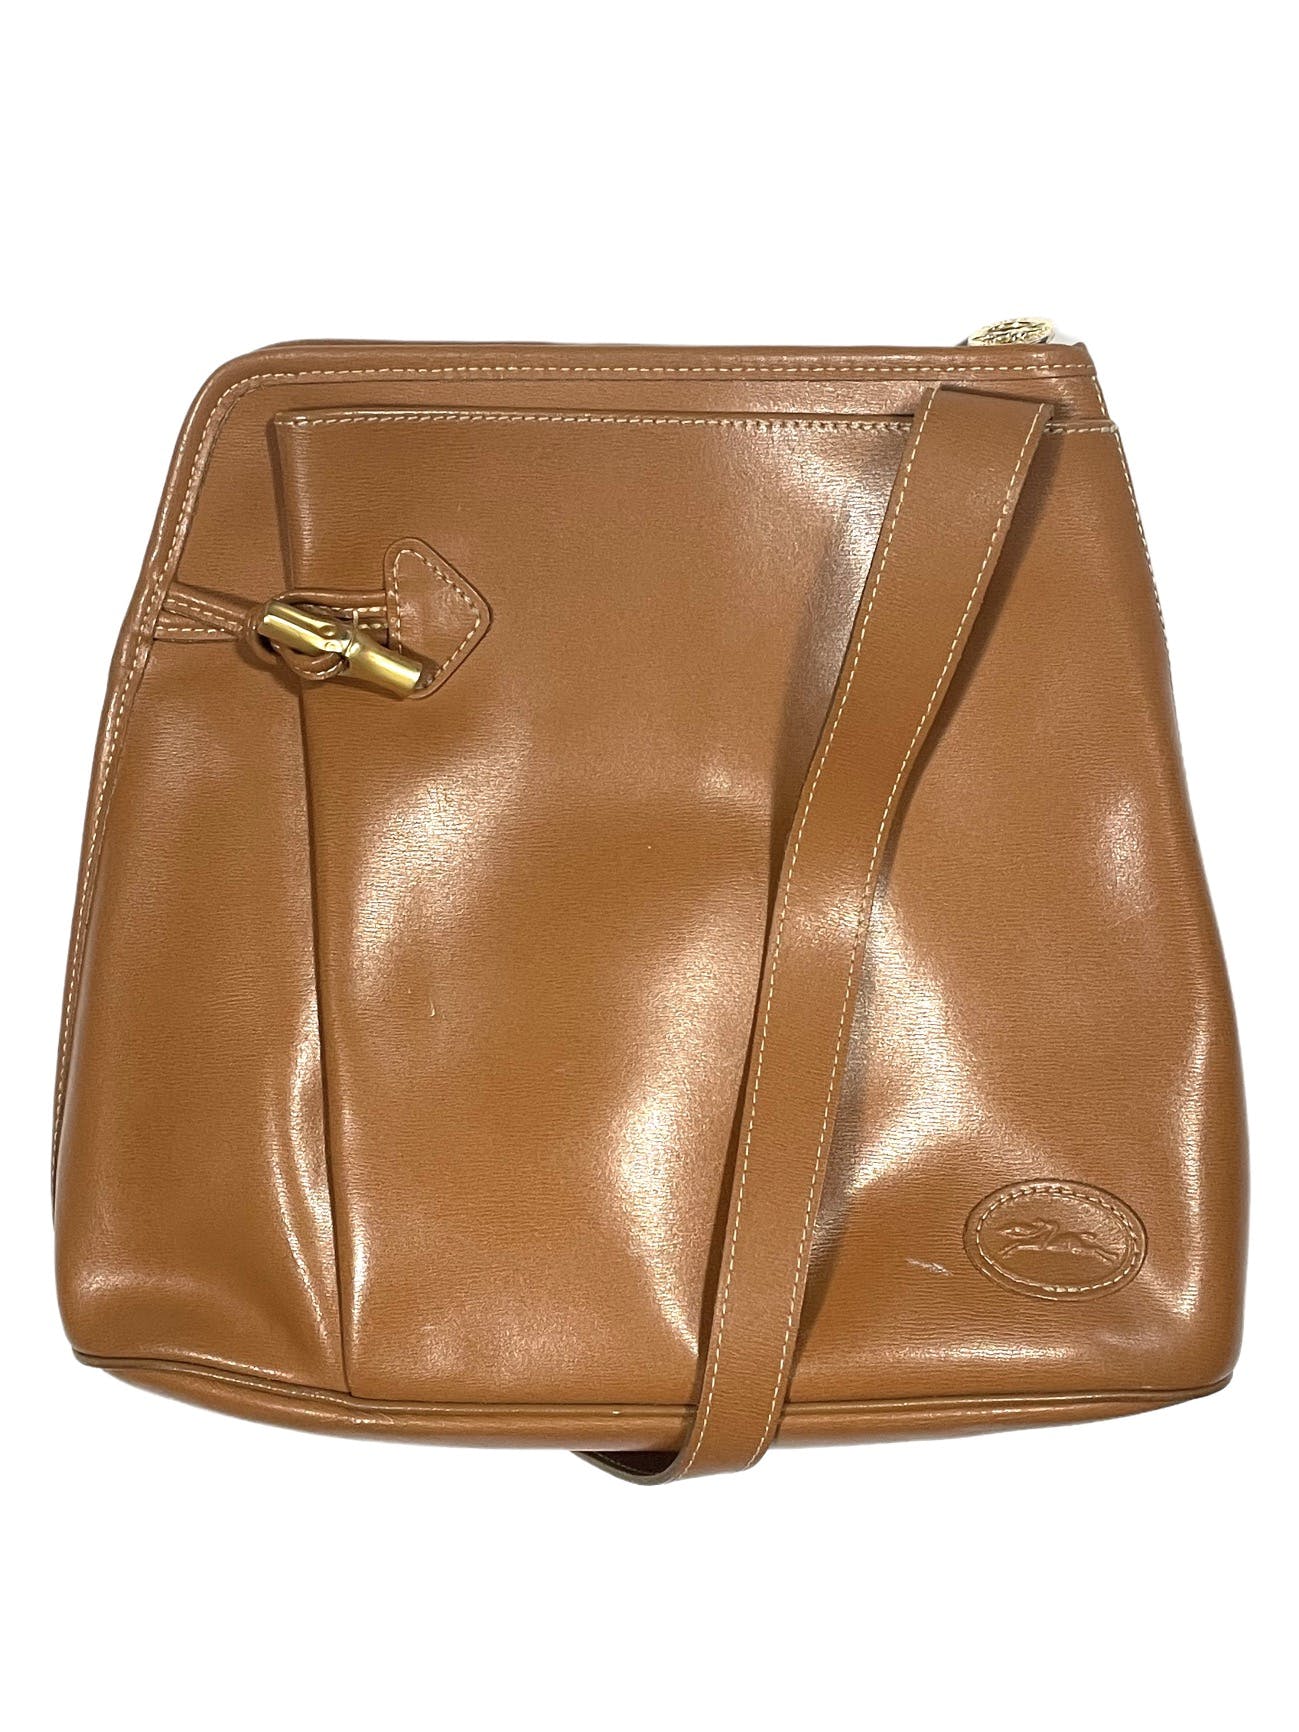 Vintage Leather Adjustable Shoulder Bag - 1